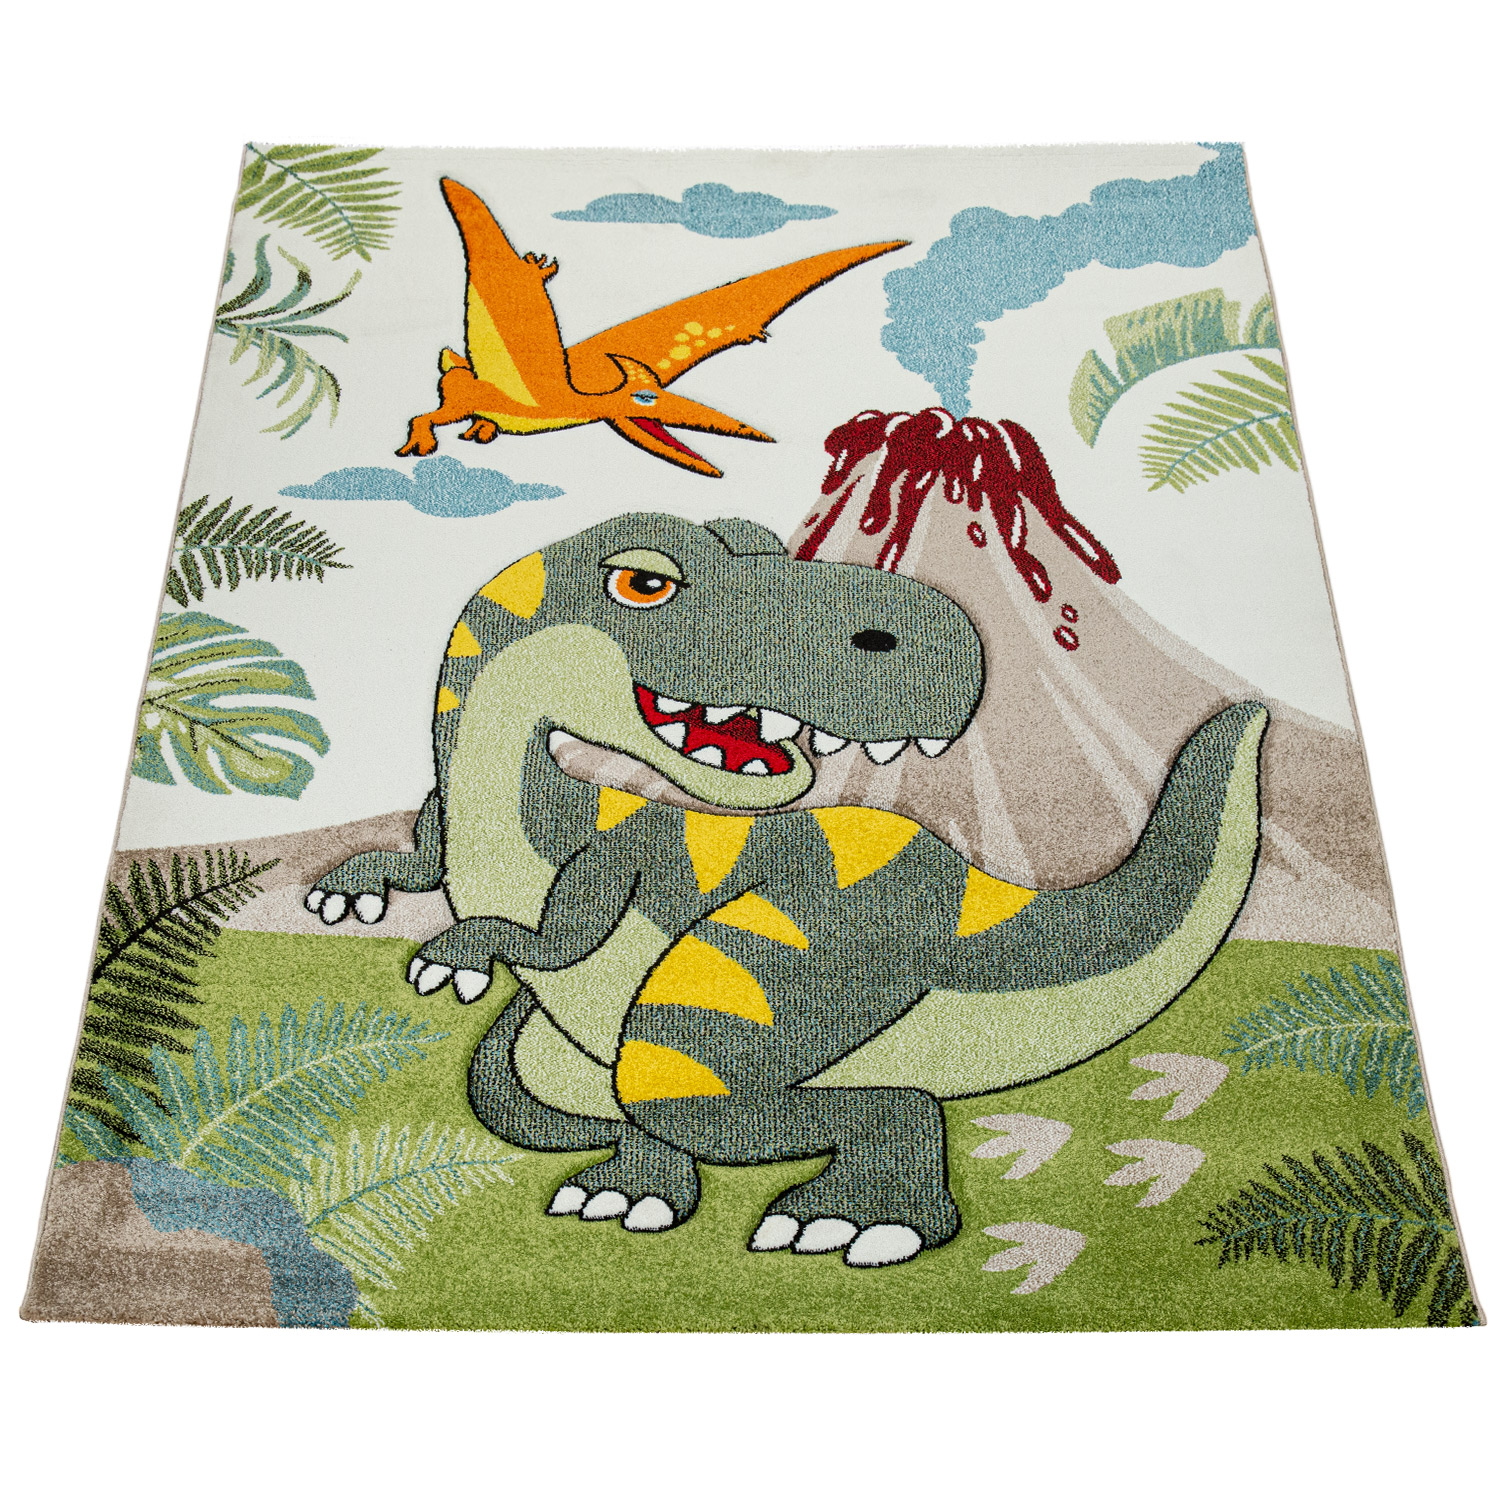 Kinderzimmer Teppich Dinosaurier Dschungel Vulkan Grün 